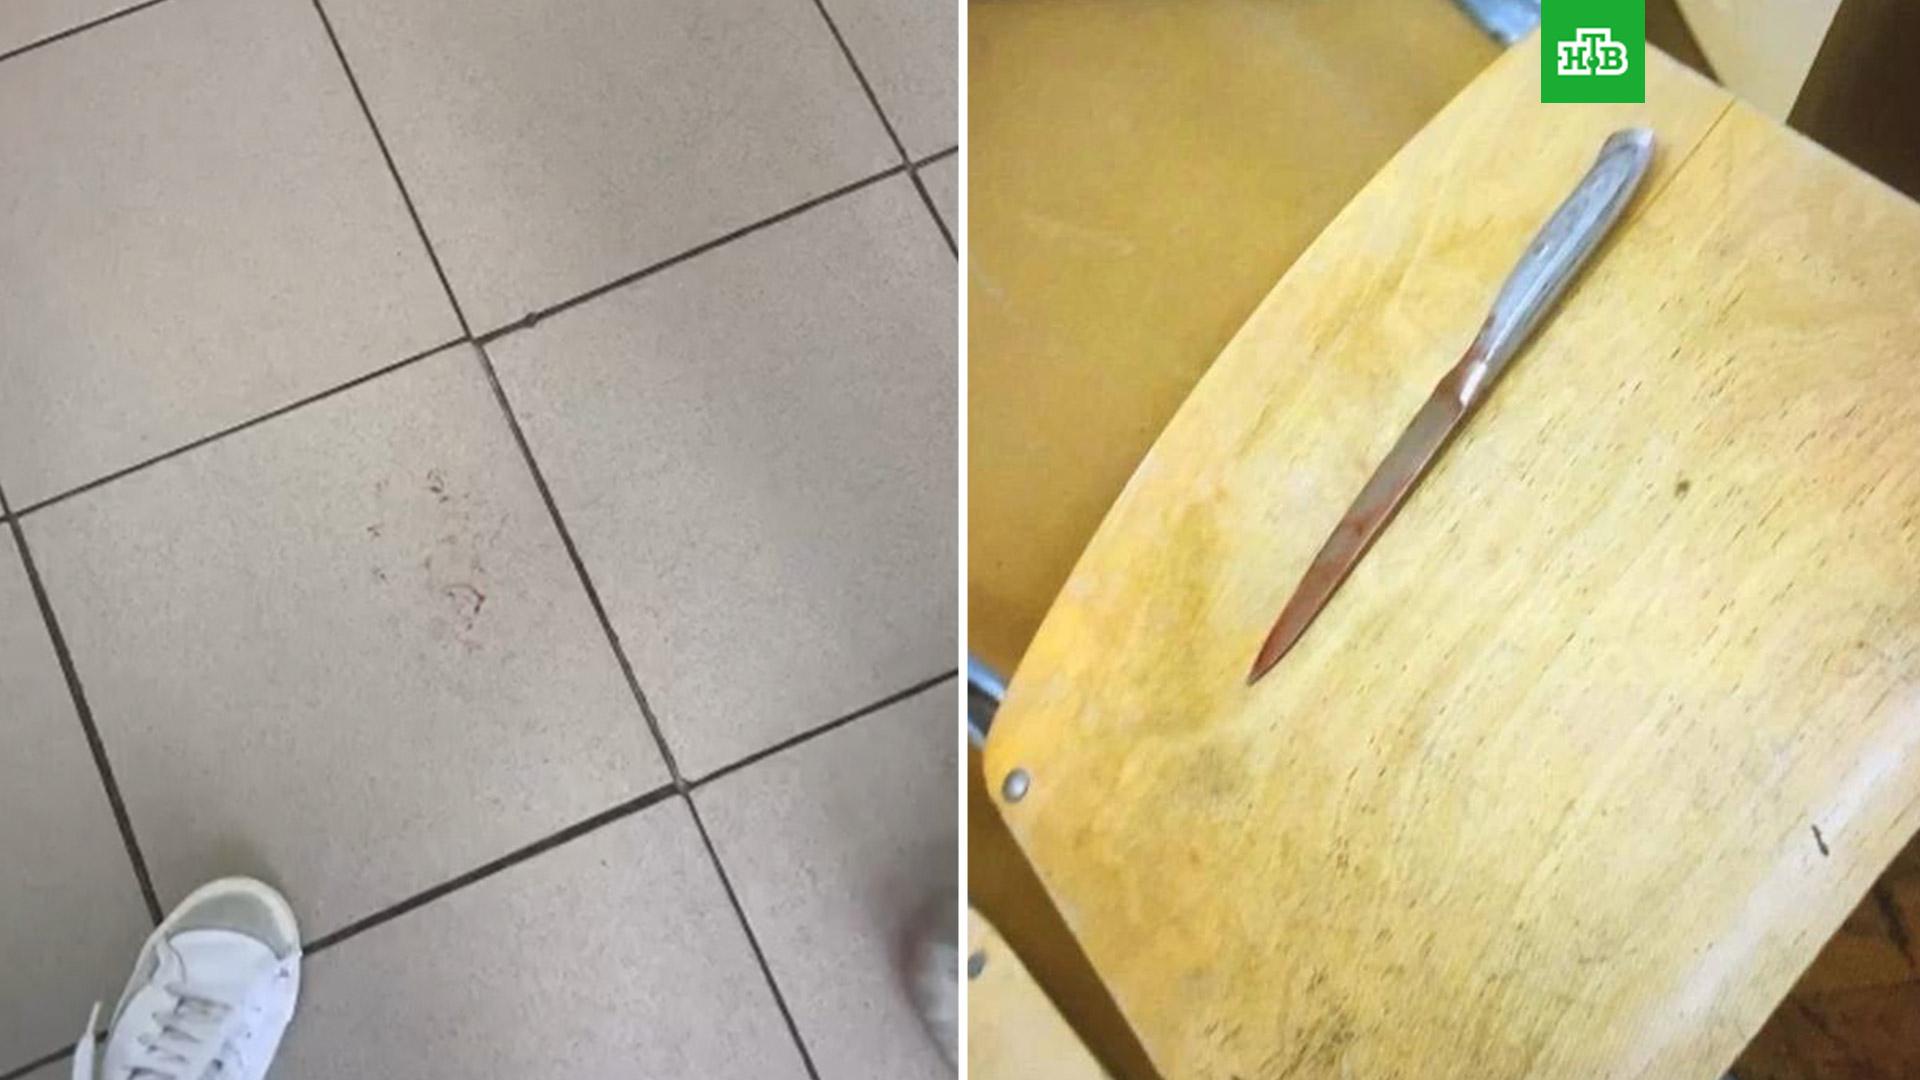 Сколоченный из неотесанных досок стол изрезанный ножами покрыли купленной